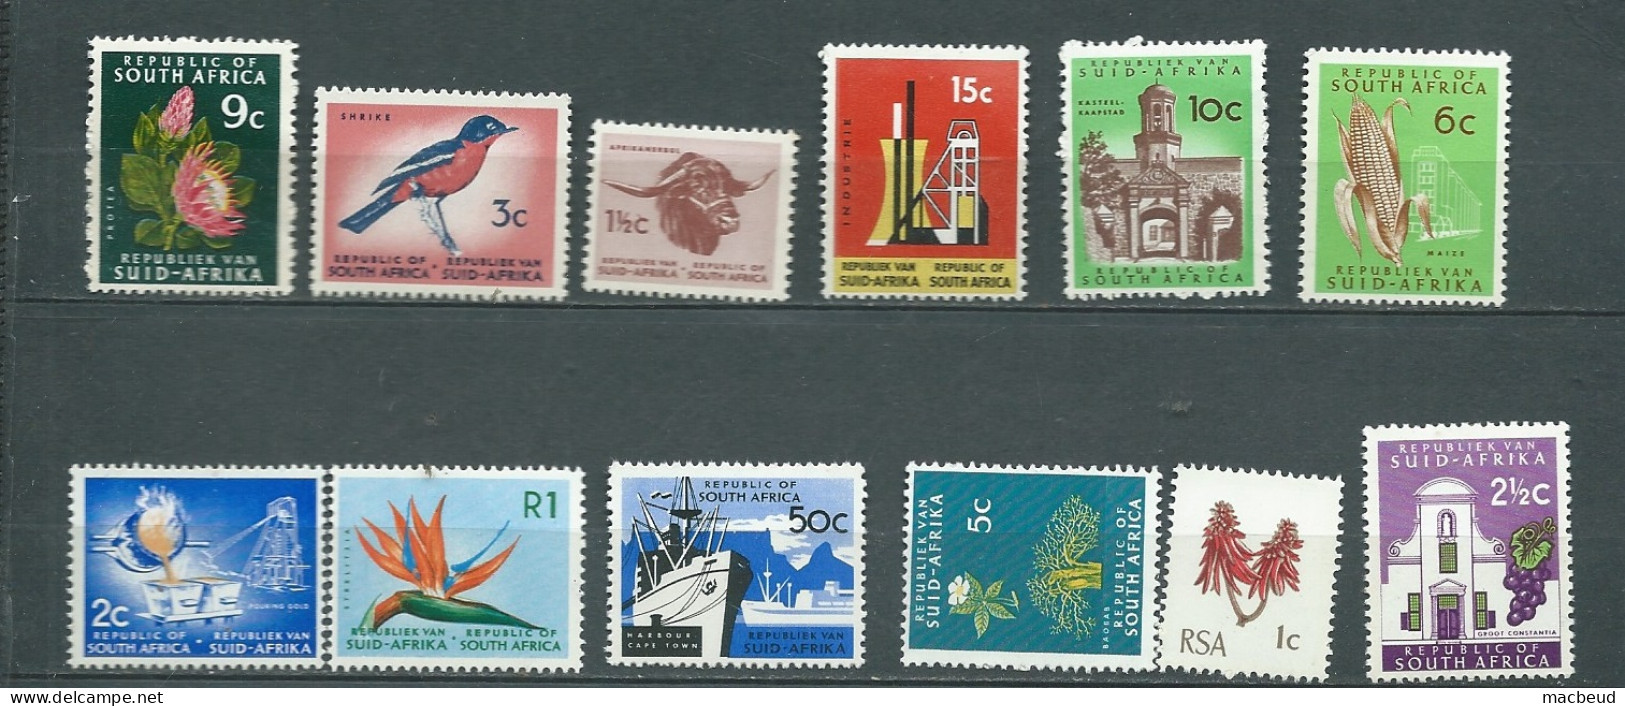 Lot 12 Timbres  Neufs ** D'afrique Du Sud - Abc33503 - Unused Stamps